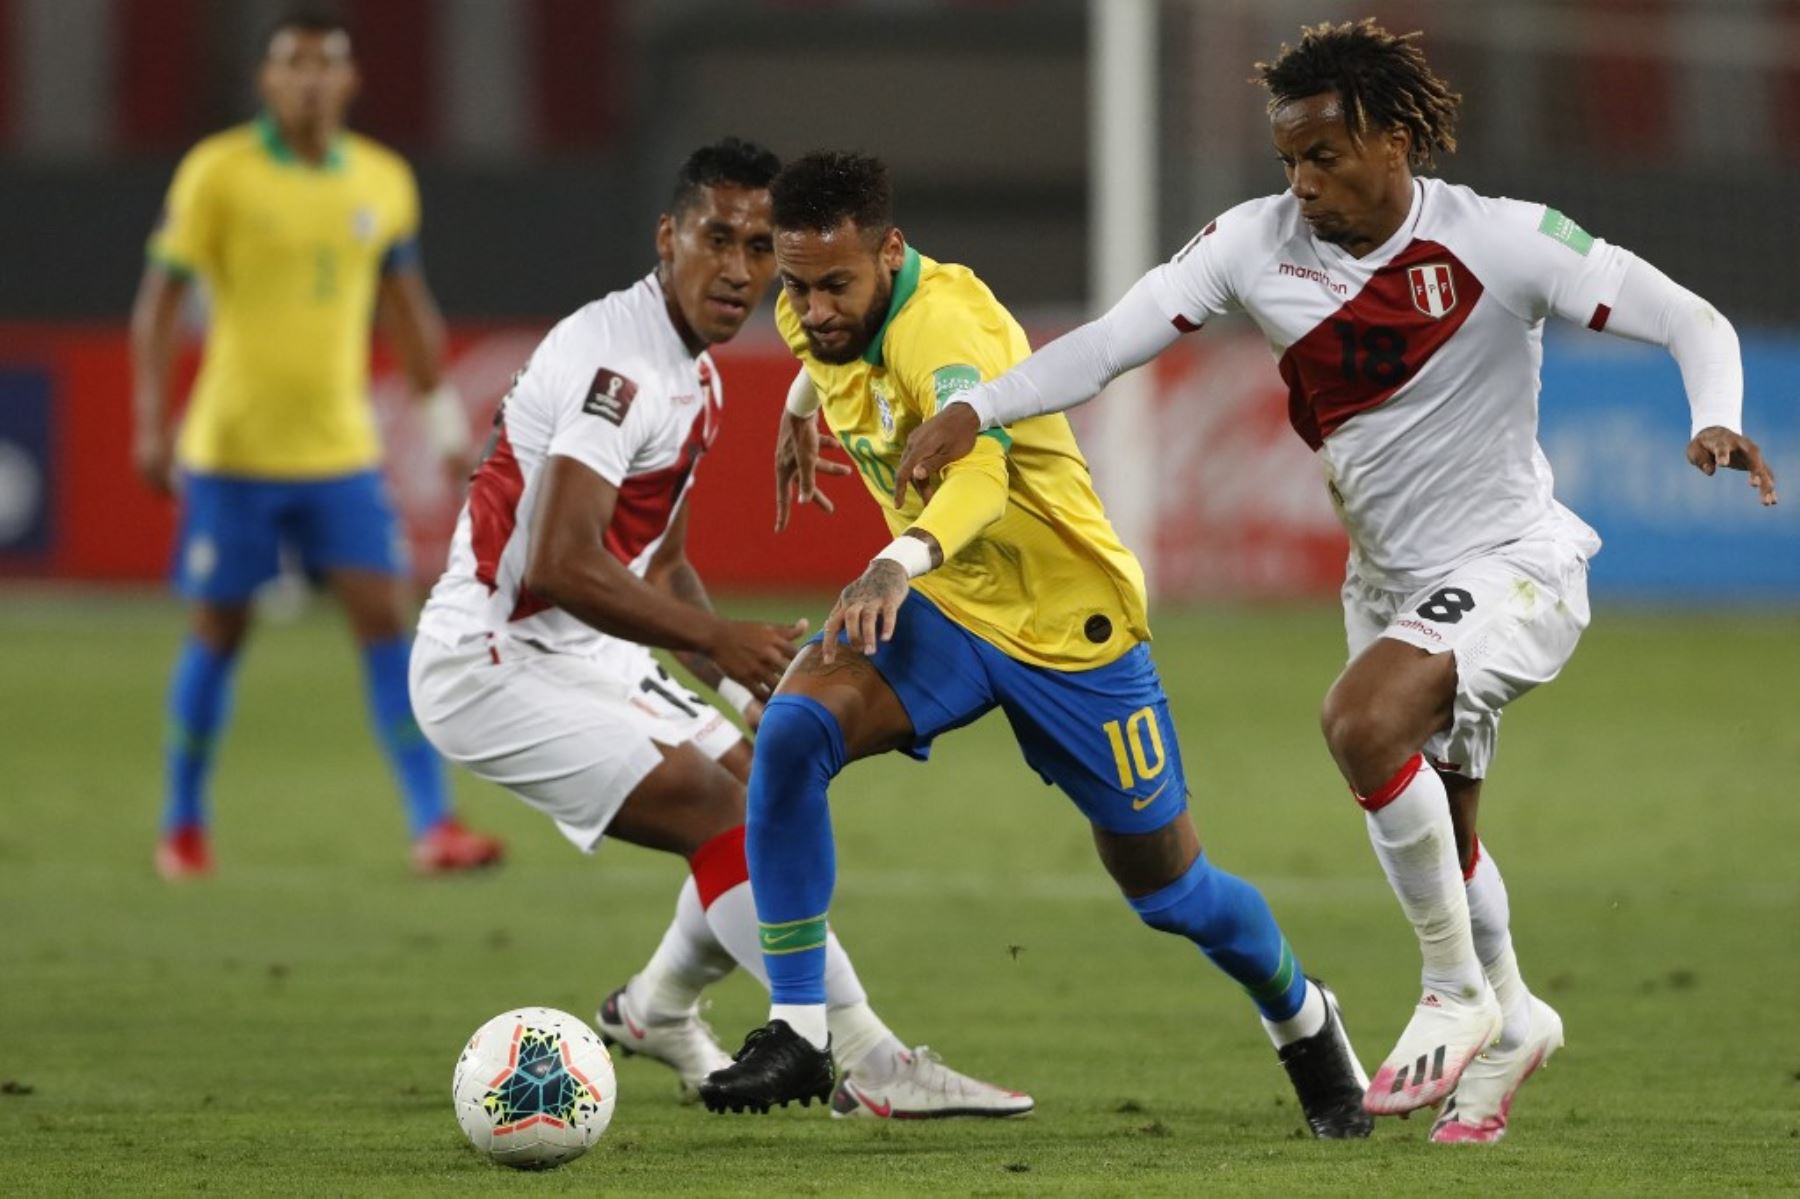 La selección peruana intentará tener un debut positivo frente al favorito Brasil